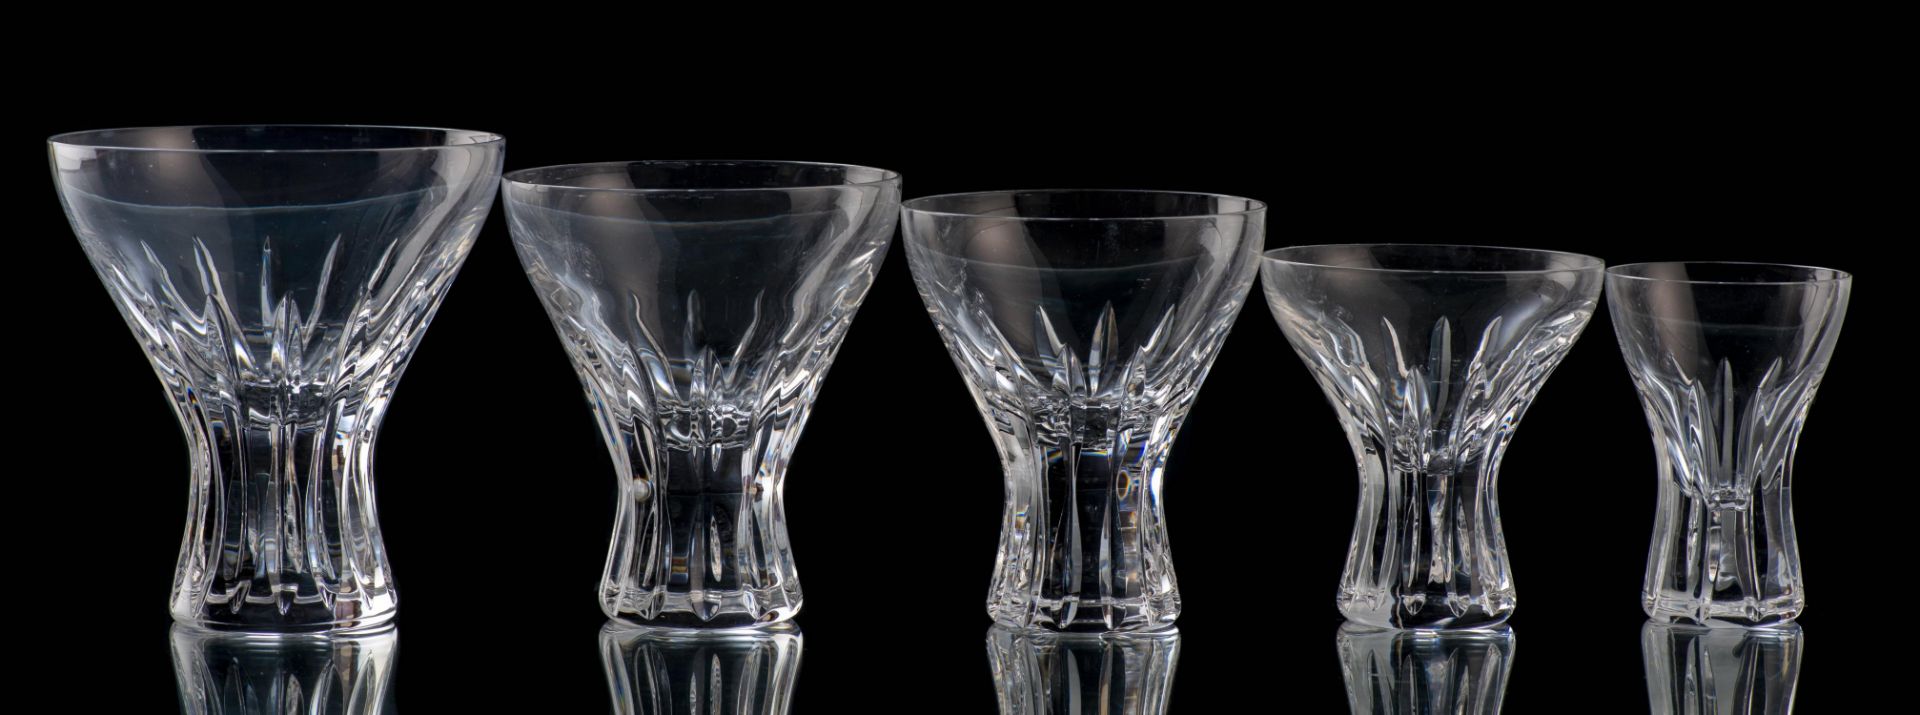 Service de verres en cristal taillé - Bild 2 aus 2